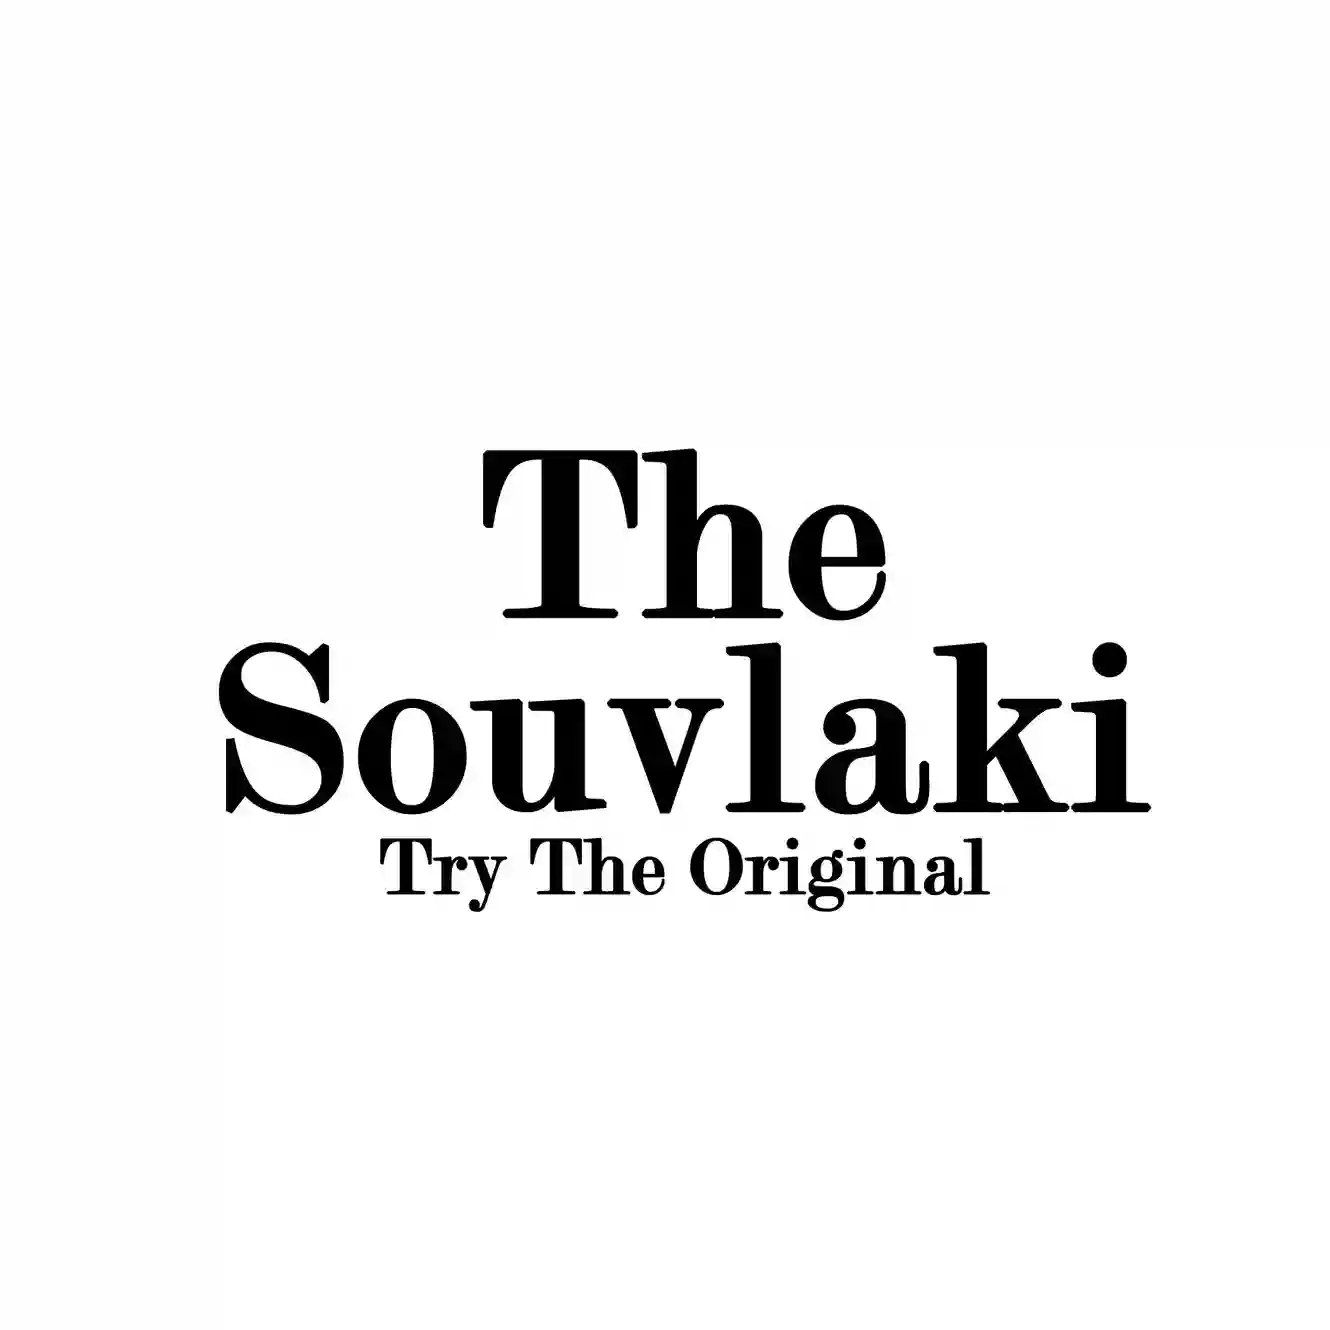 The souvlaki